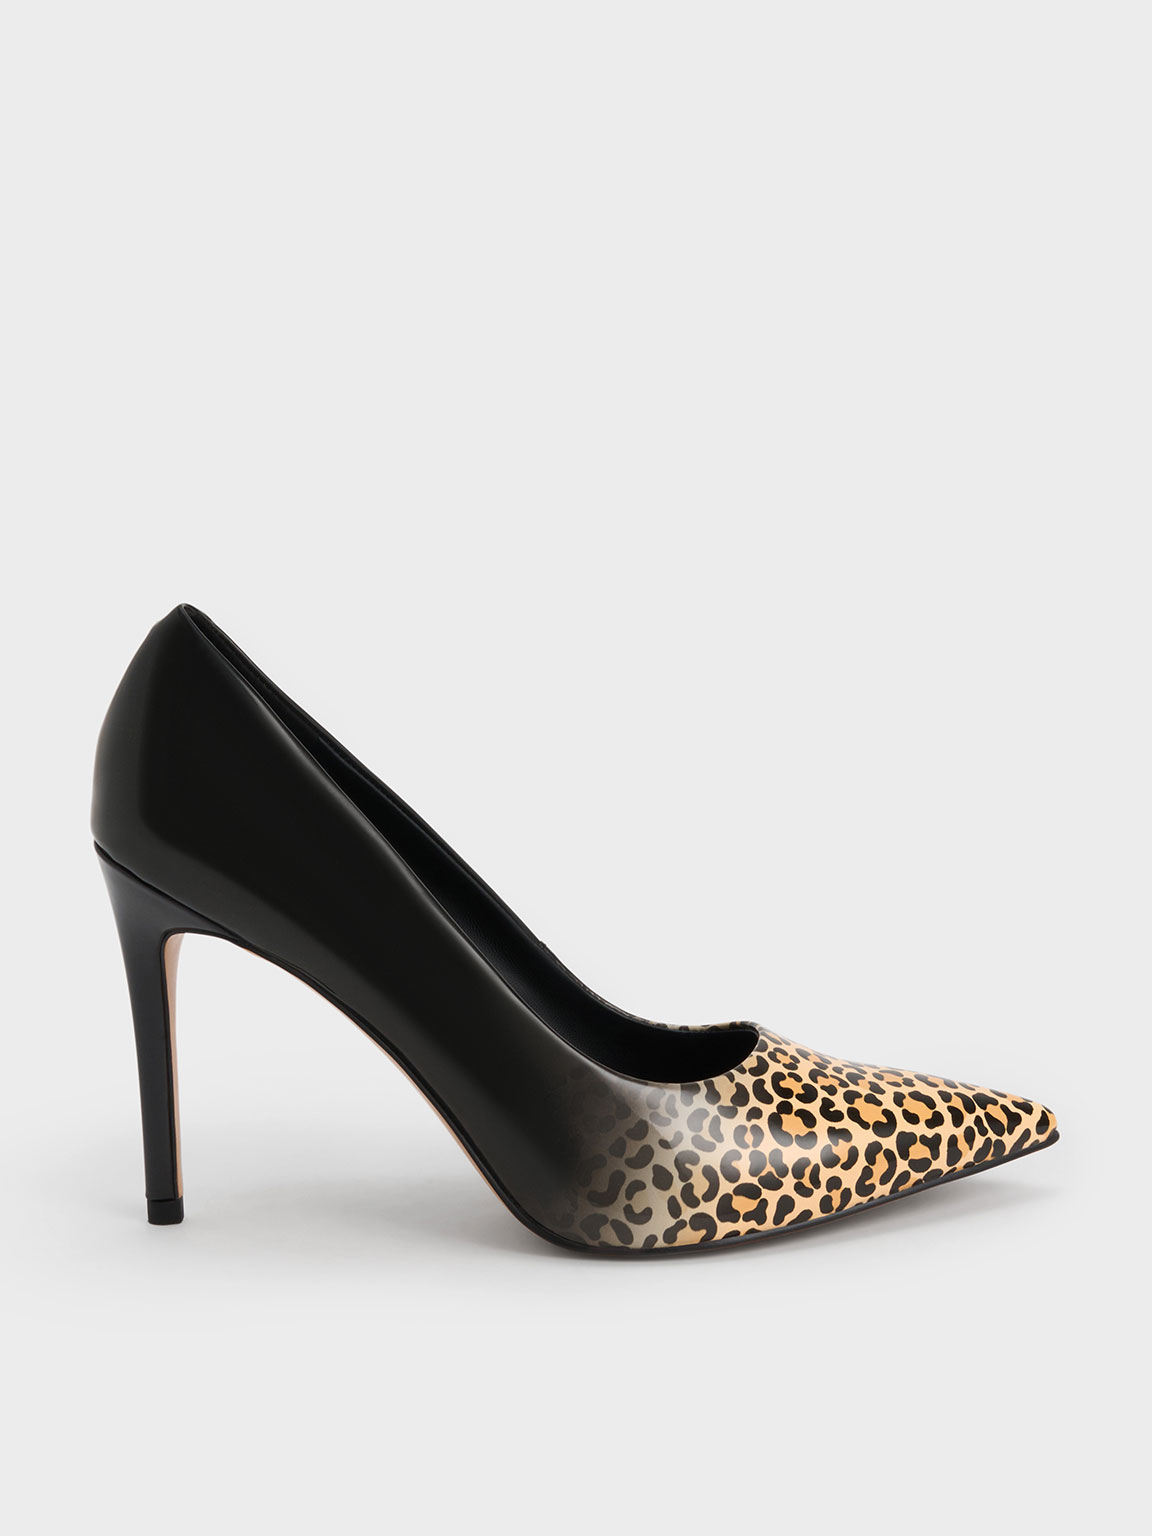 37UK Leopard heels, Women's Fashion, Footwear, Heels on Carousell